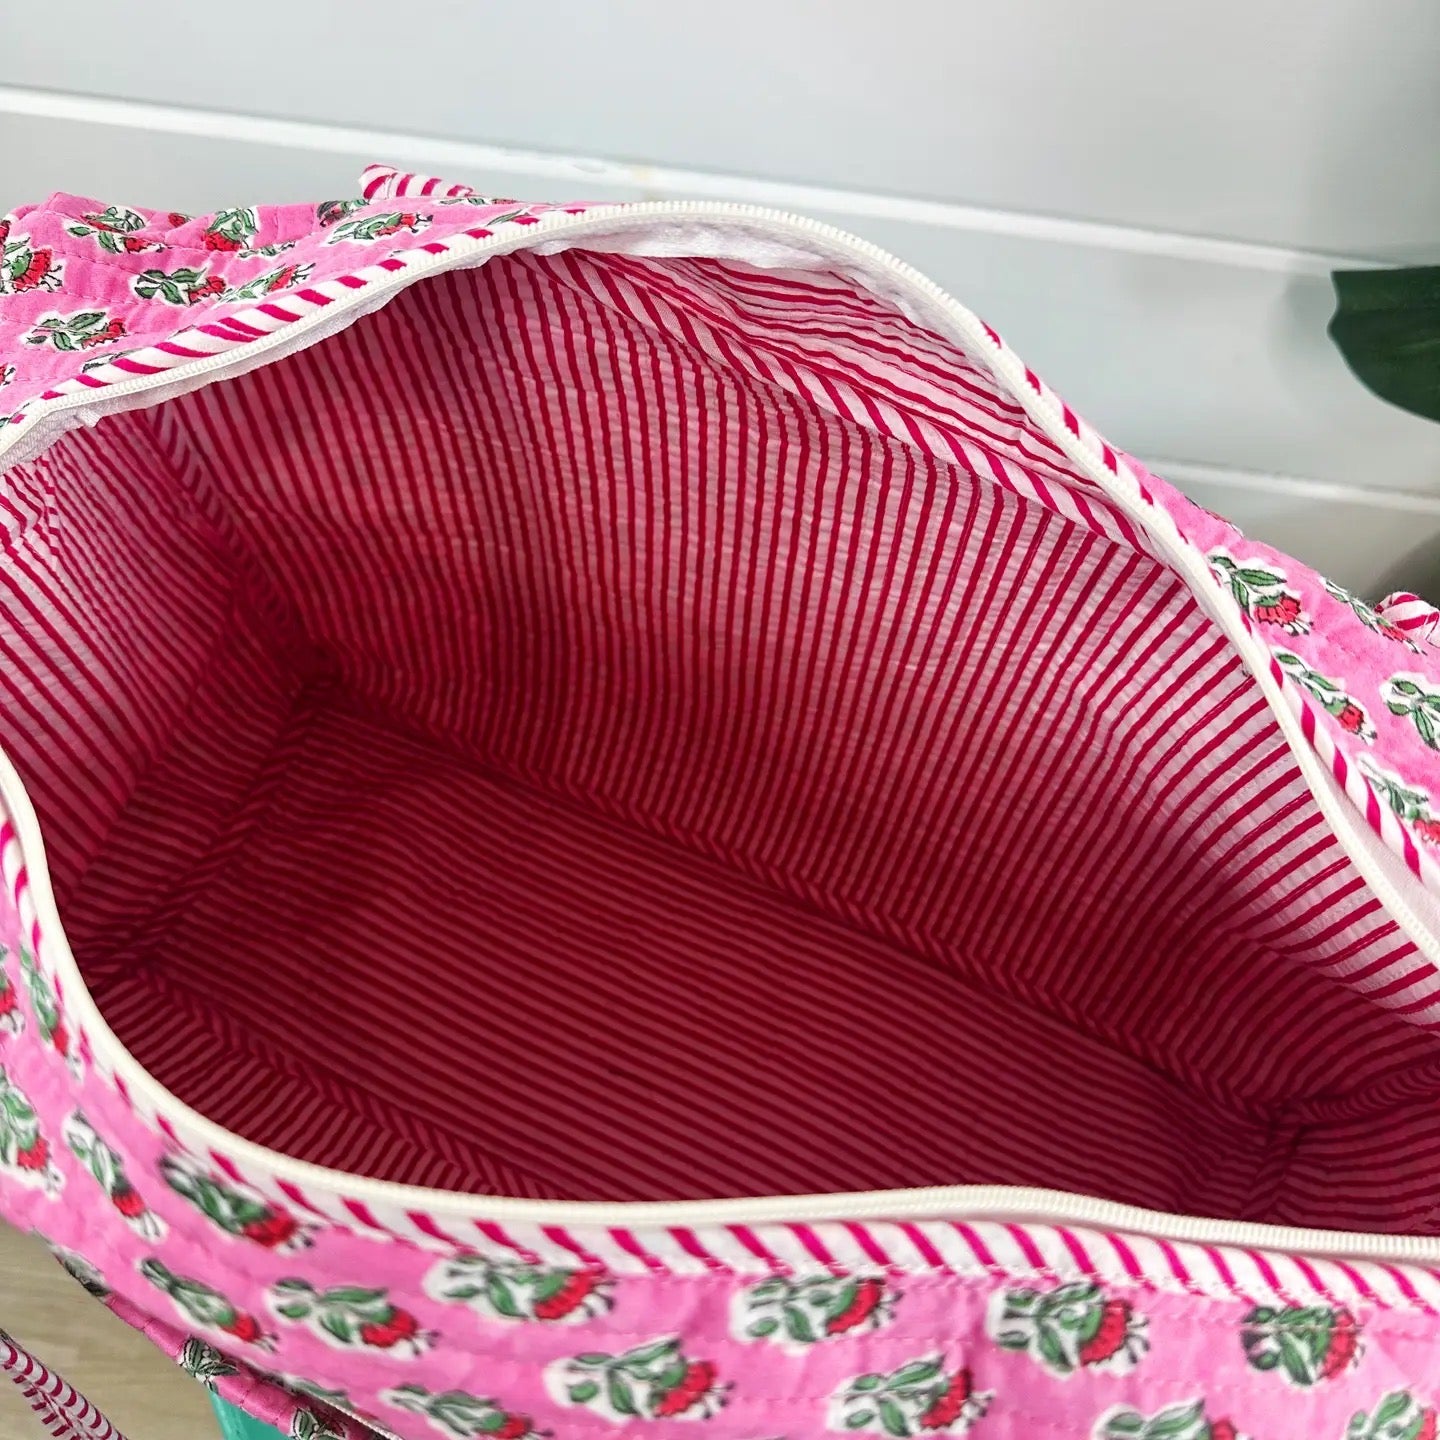 Quilted Weekender Bag - Pink Floral